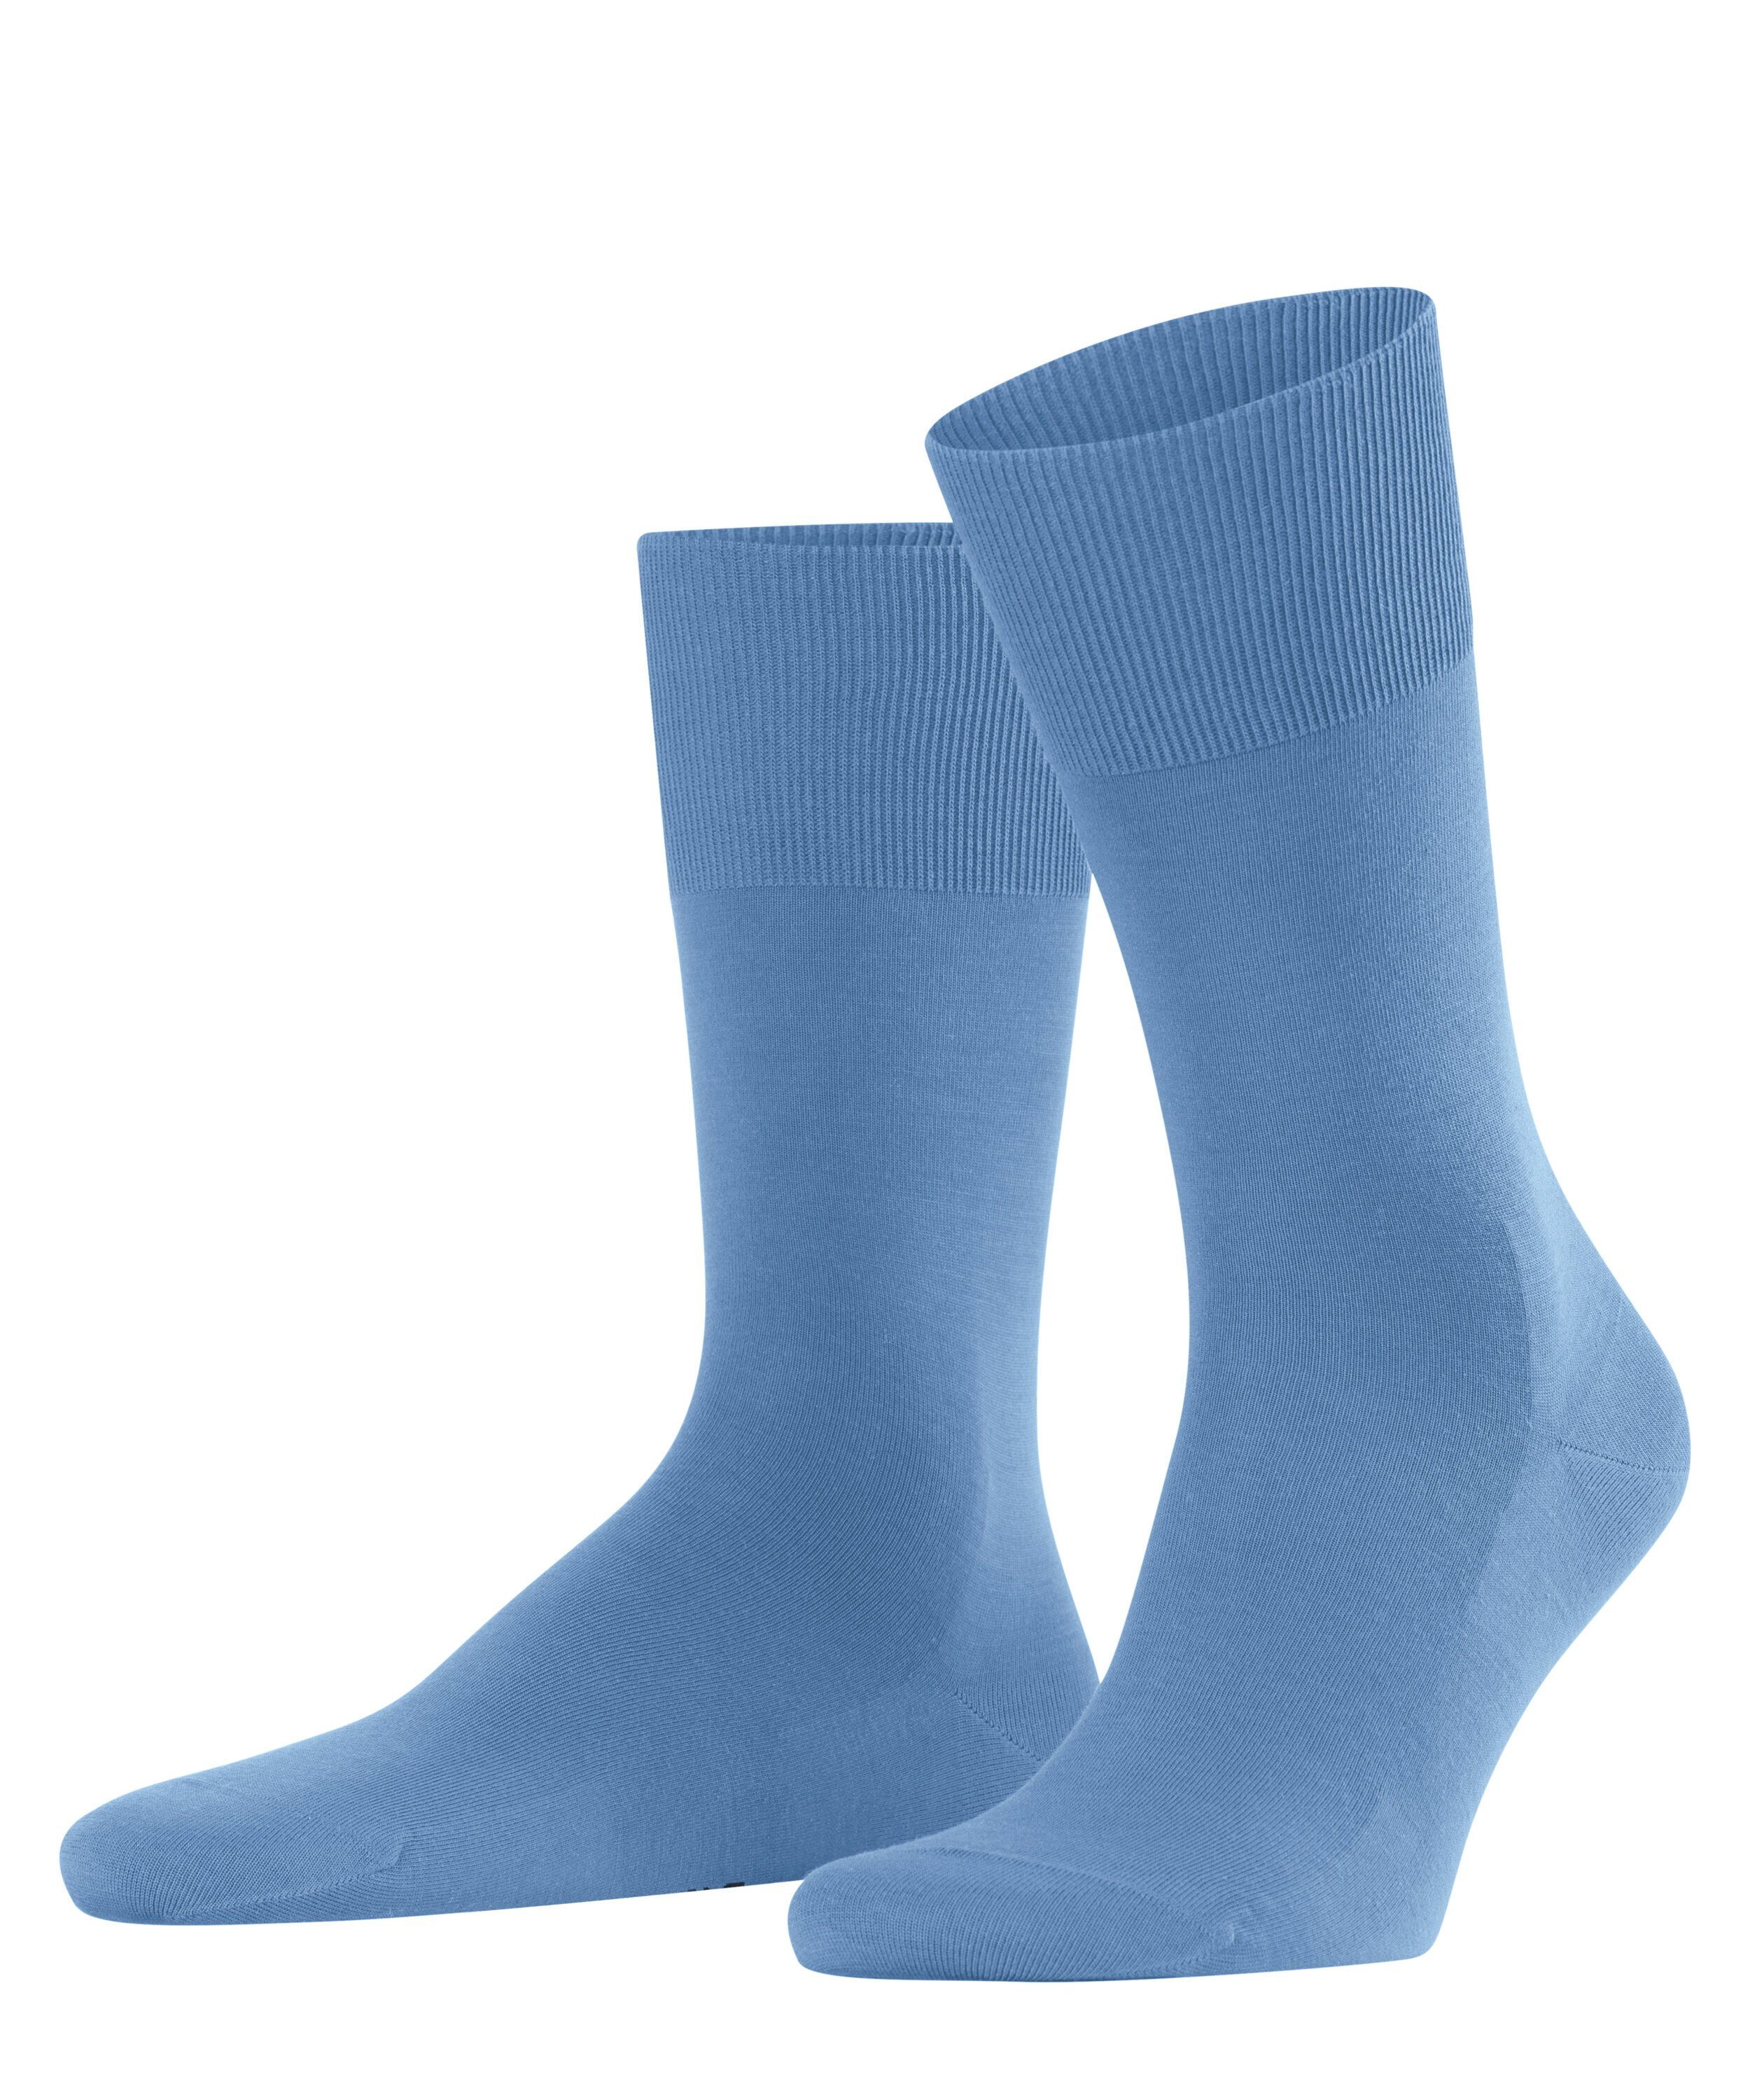 ClimaWool (1-Paar) (6554) cornflower blue Socken FALKE